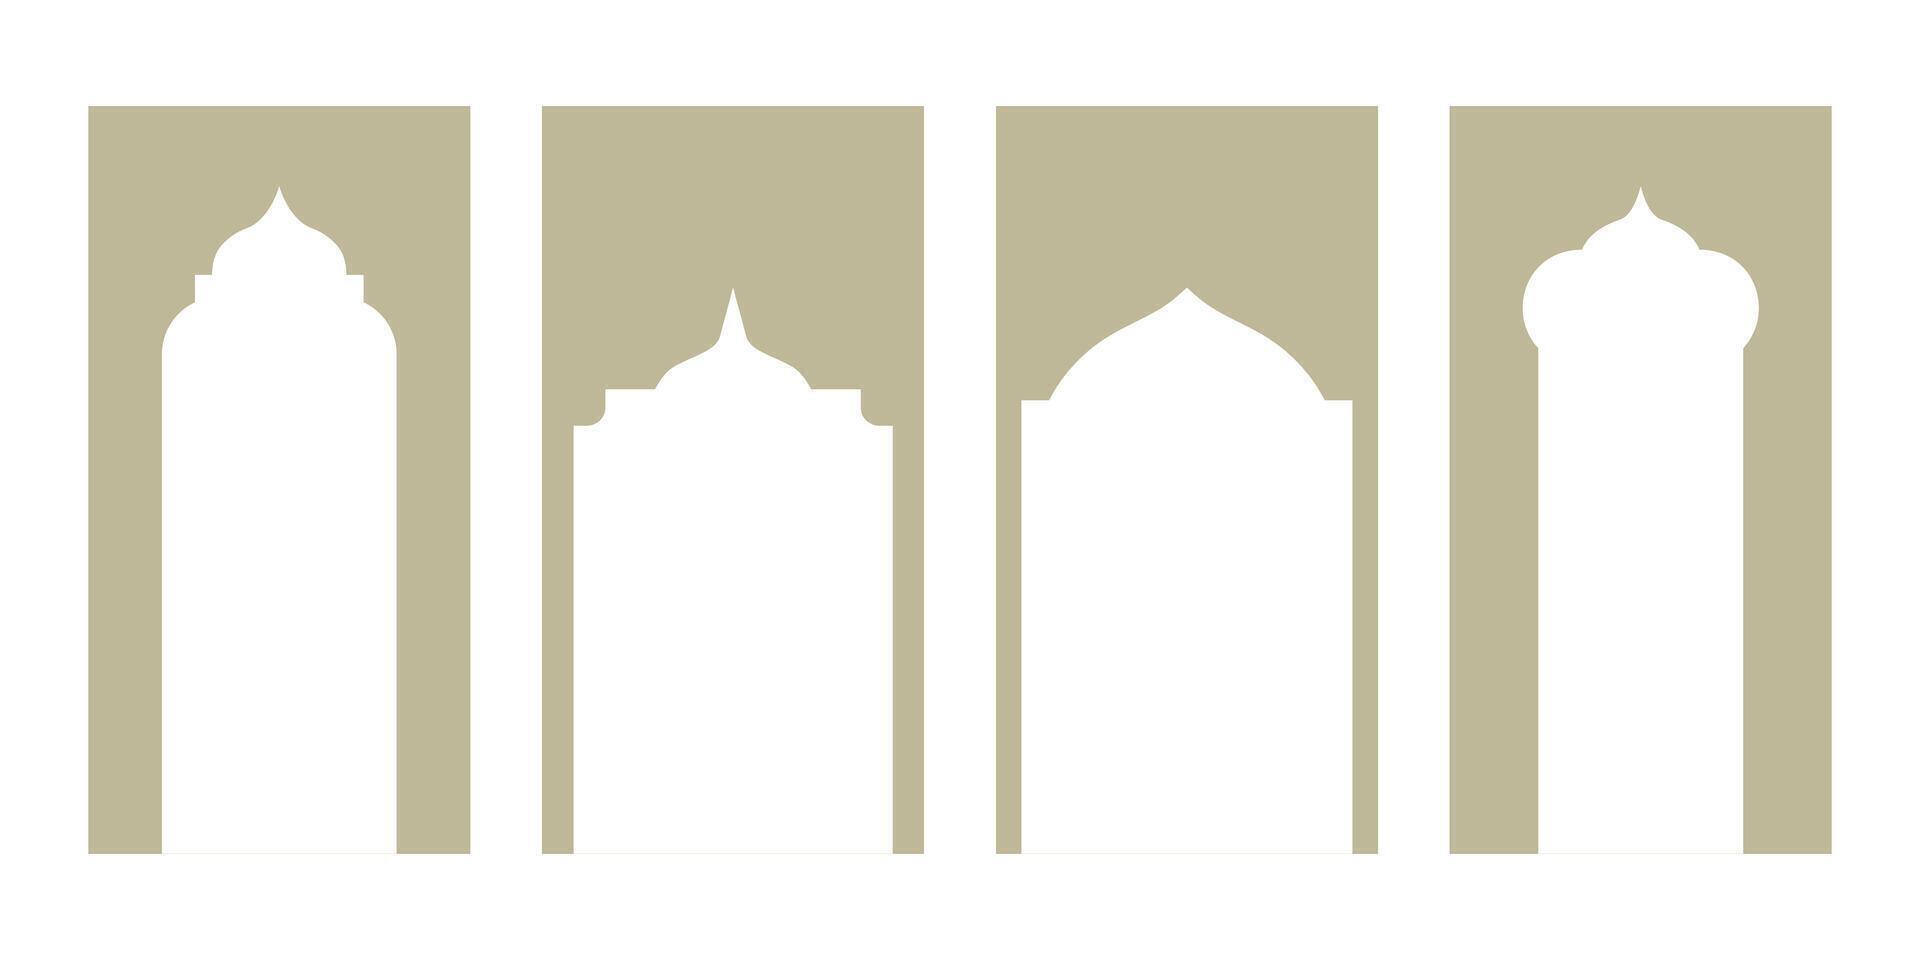 encantador colección de oriental estilo islámico Ramadán kareem y eid Mubarak ventanas y arcos moderno diseño presentando puertas, mezquita cúpulas, y linternas social medios de comunicación vertical modelo vector